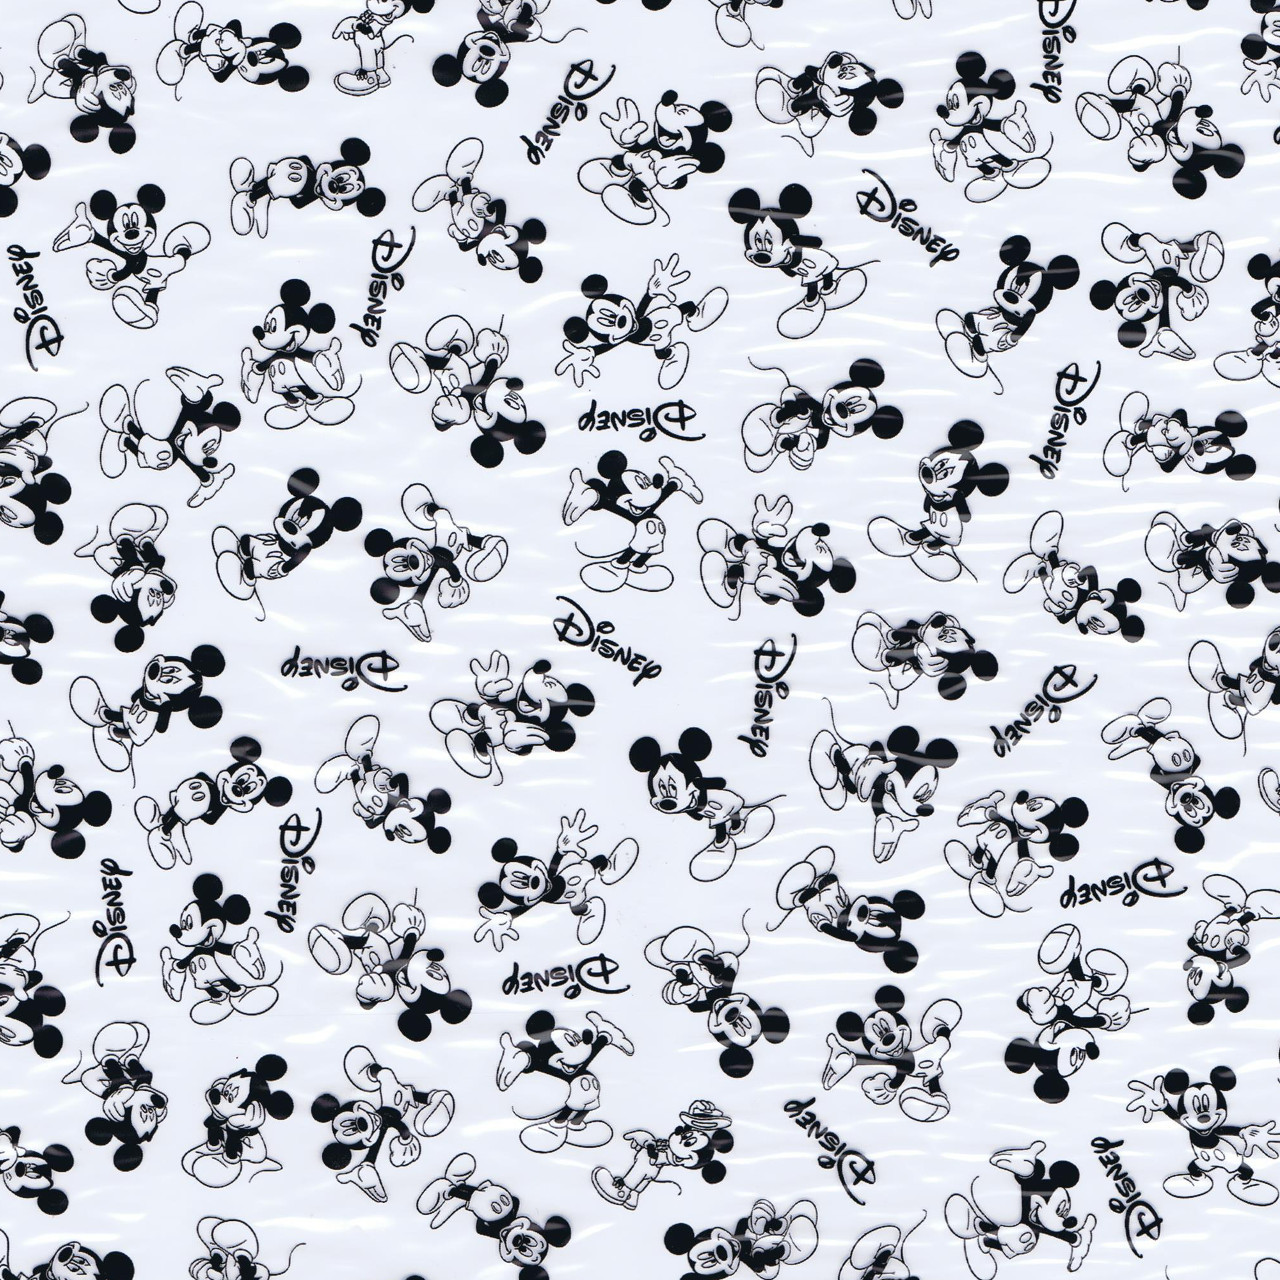 미키 마우스 배경 흑백,무늬,디자인,검정색과 흰색,폰트,직물